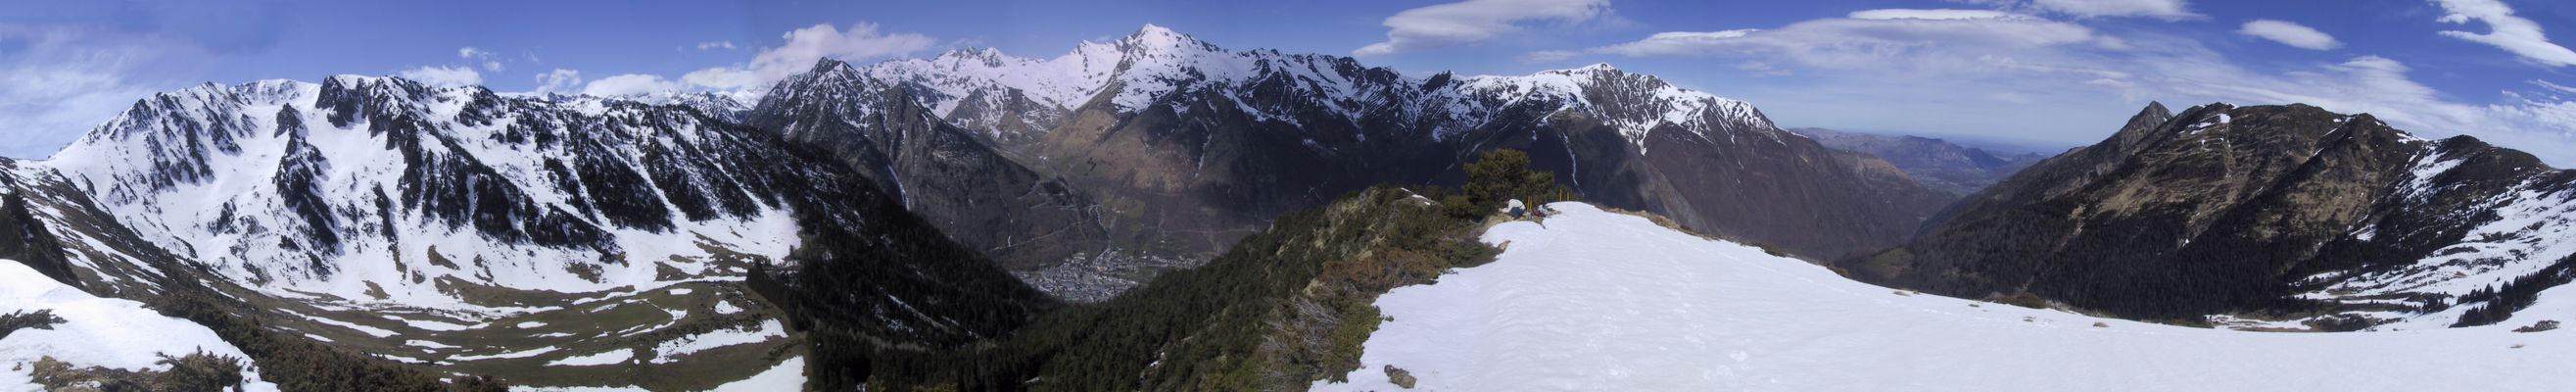 Plateau de Lisey, Cauterets, Lourdes